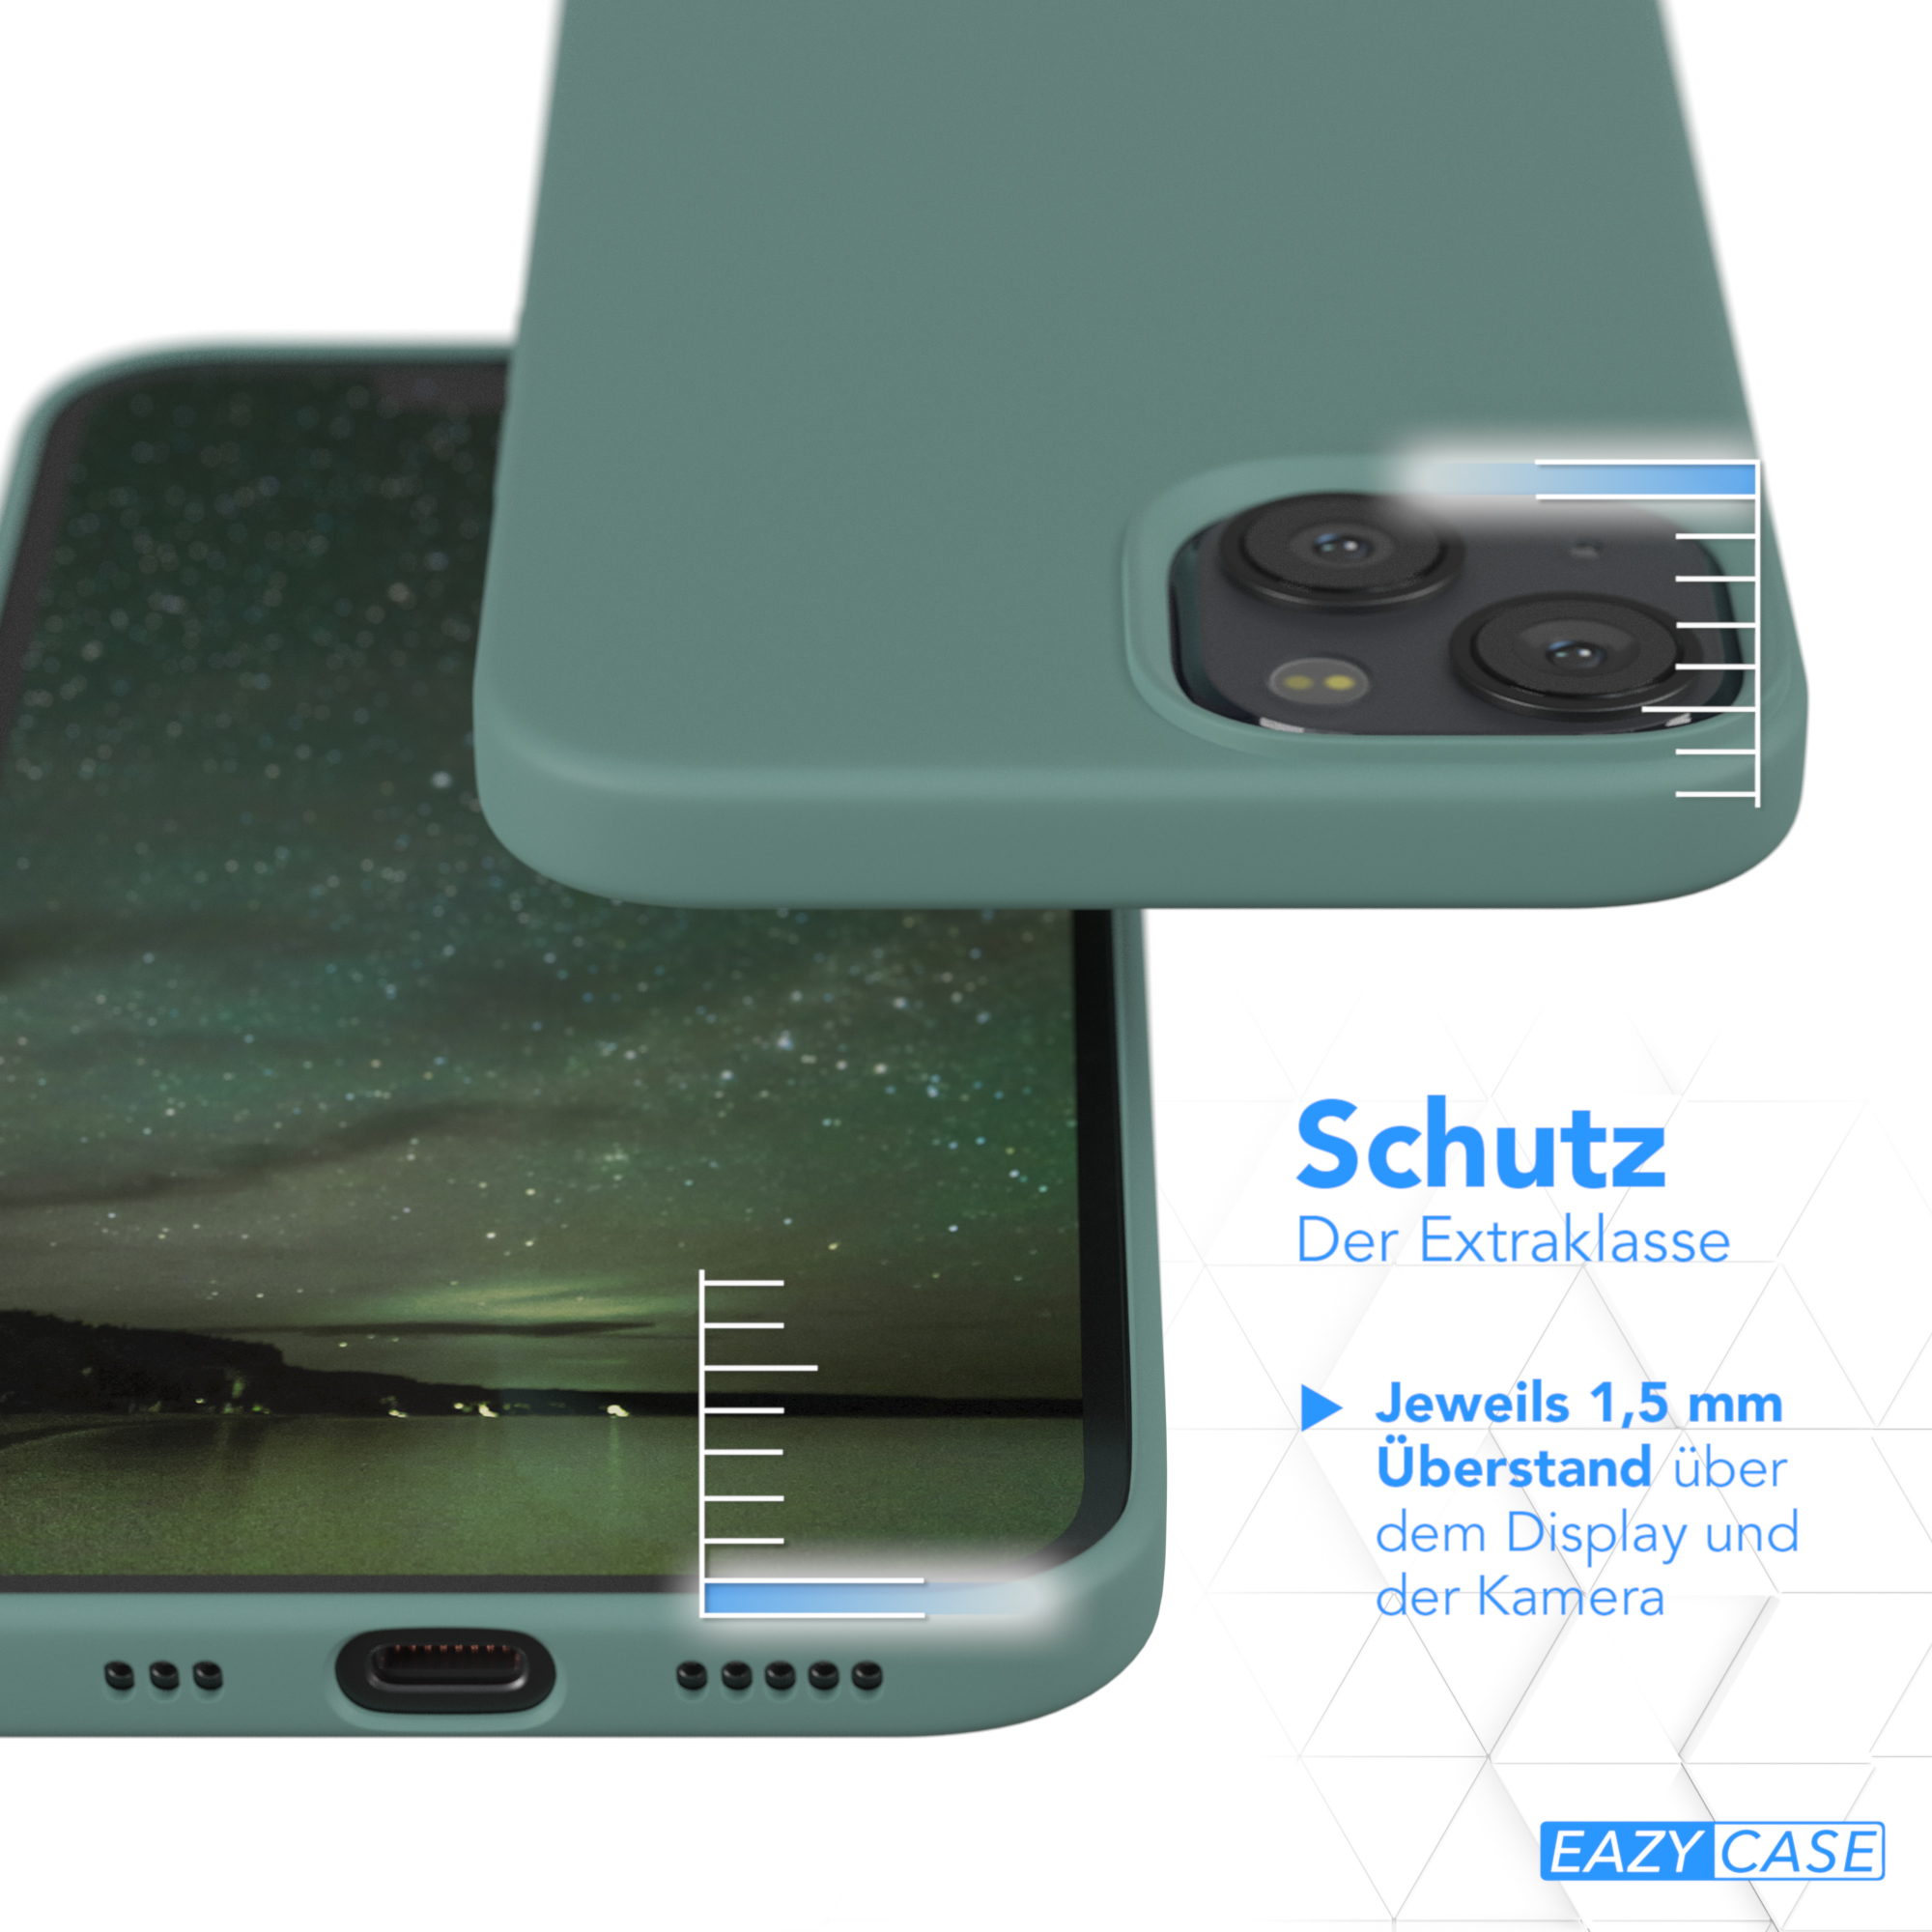 EAZY CASE Premium Silikon Handycase, 13, Grün iPhone / Apple, Nachtgrün Backcover